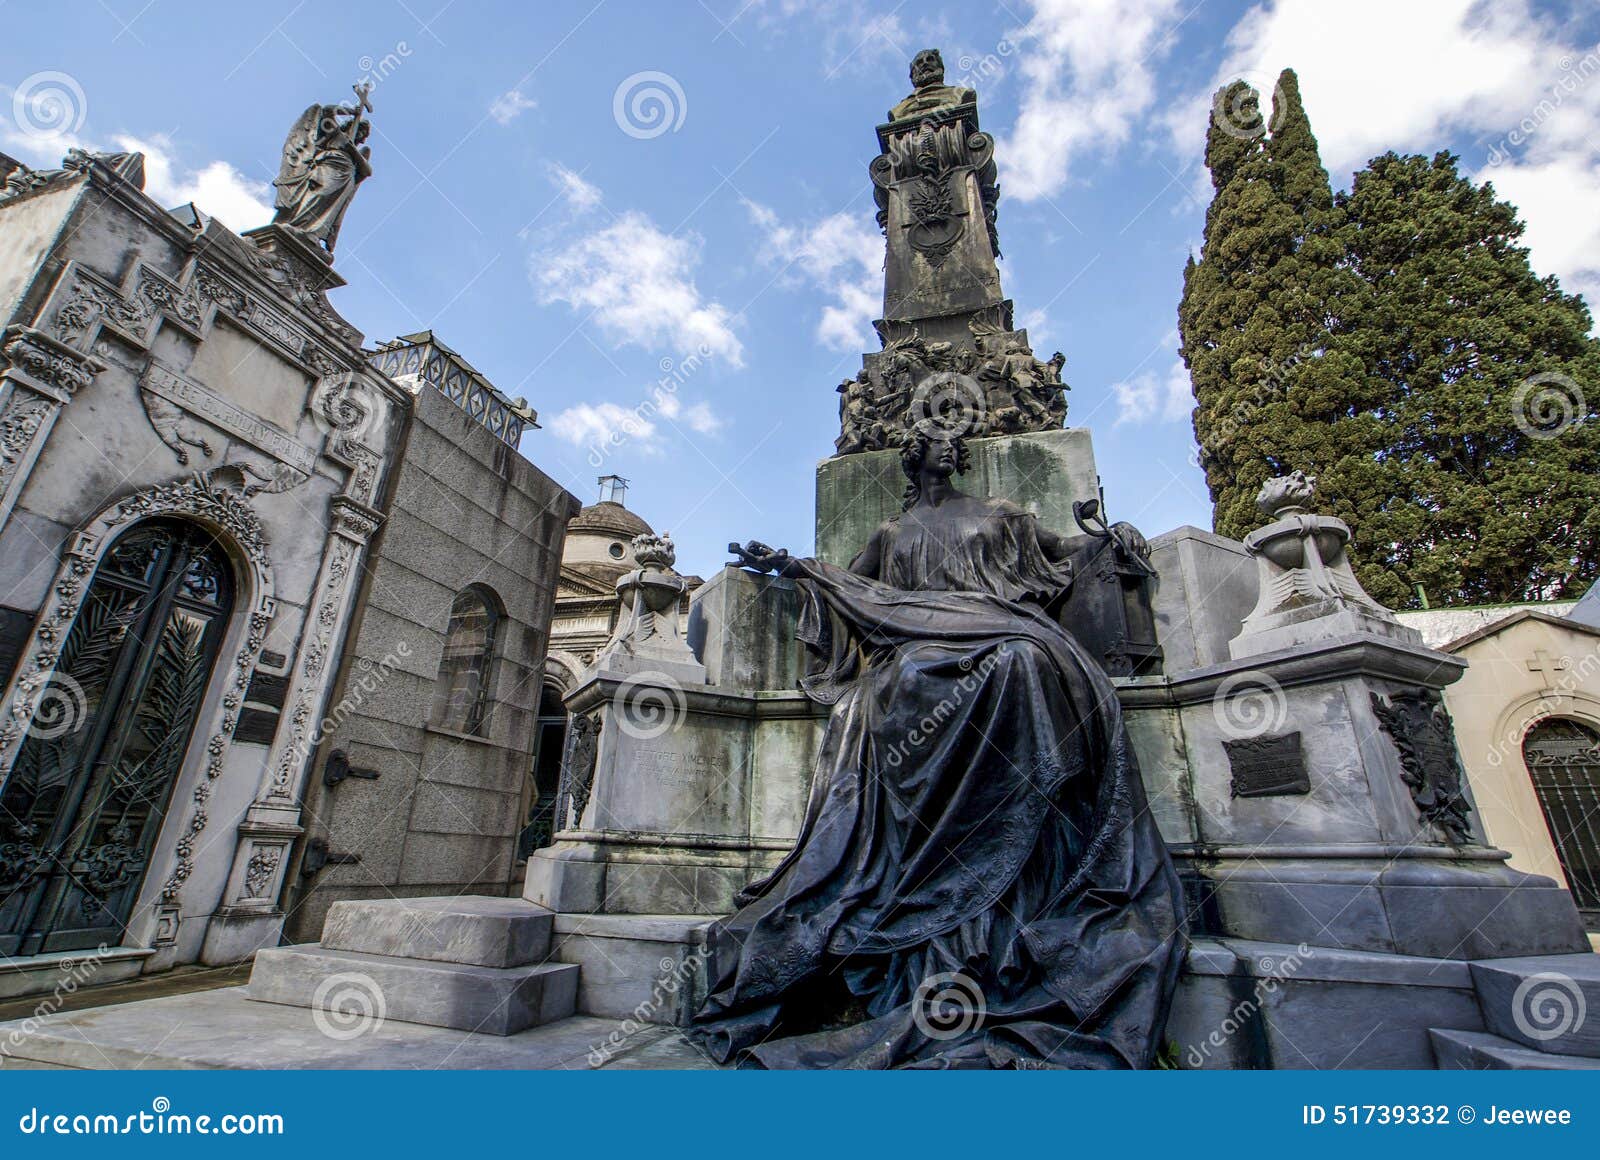 cementerio de la recoleta cemetery in buenos aires, argentina